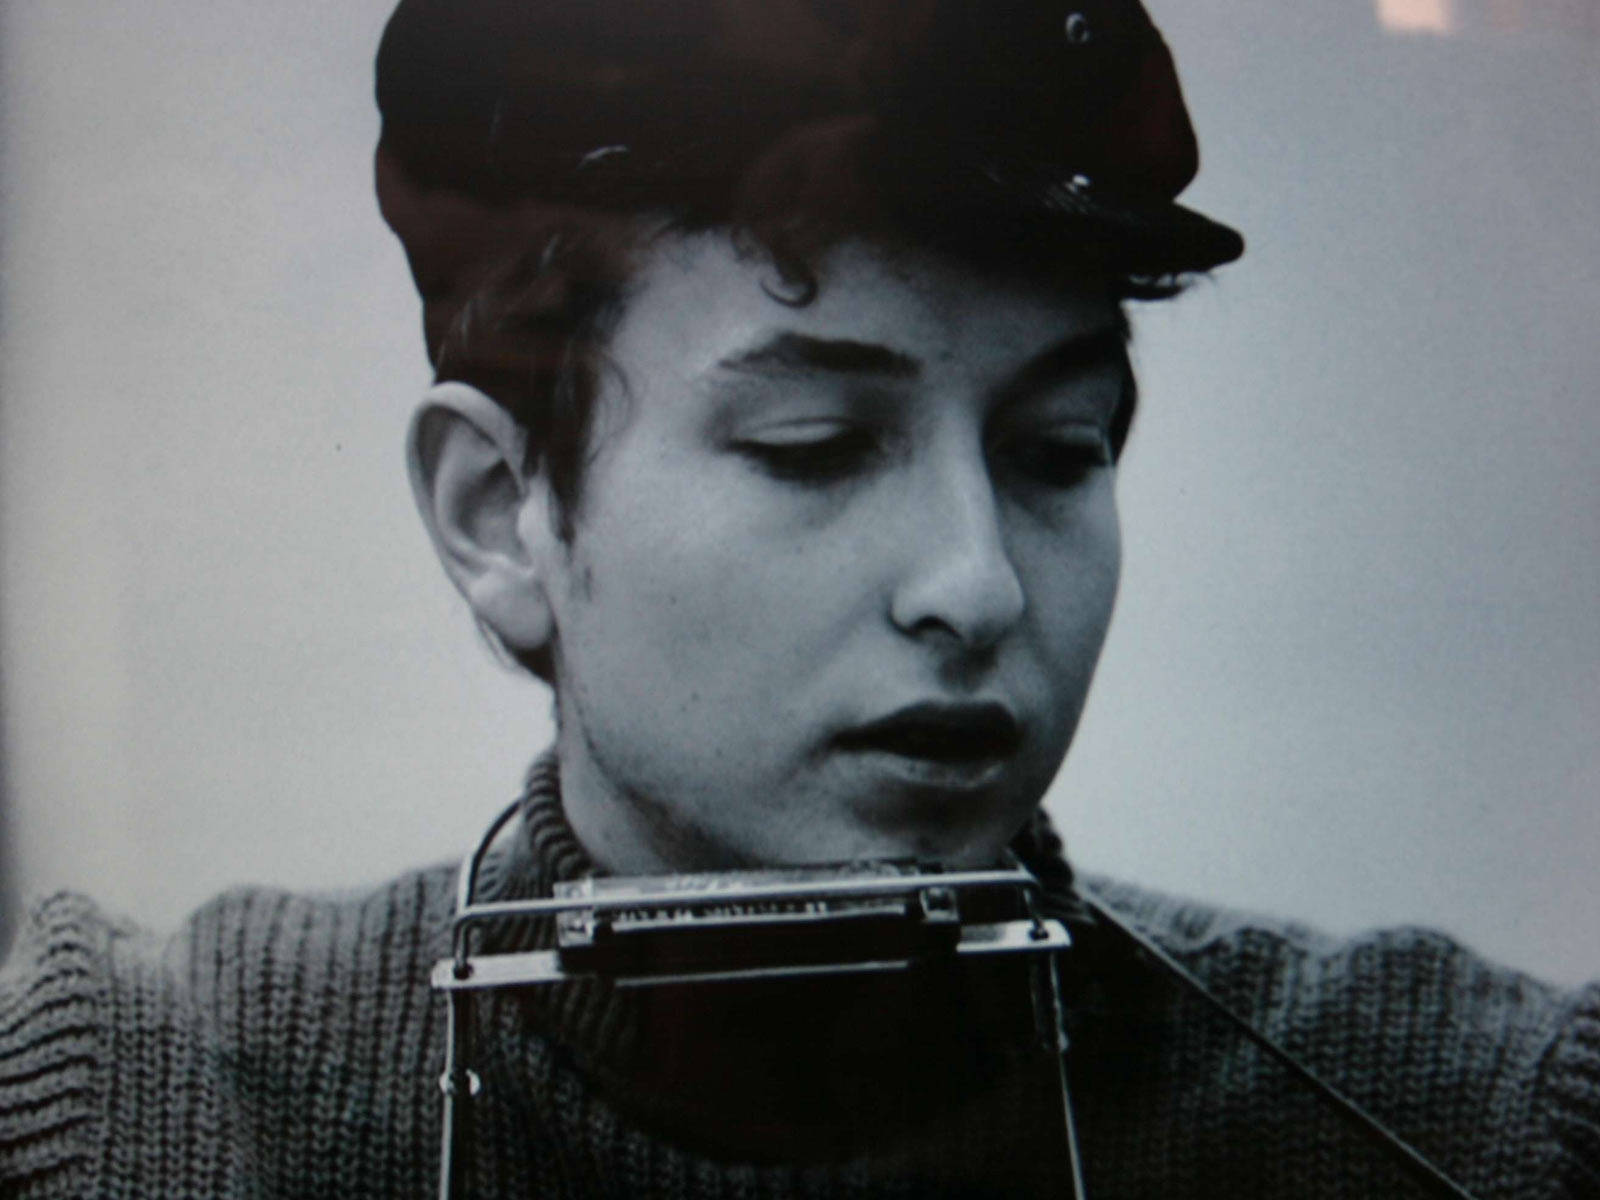 Bob Dylan Retro Portrait Singer Songwriter Wallpaper